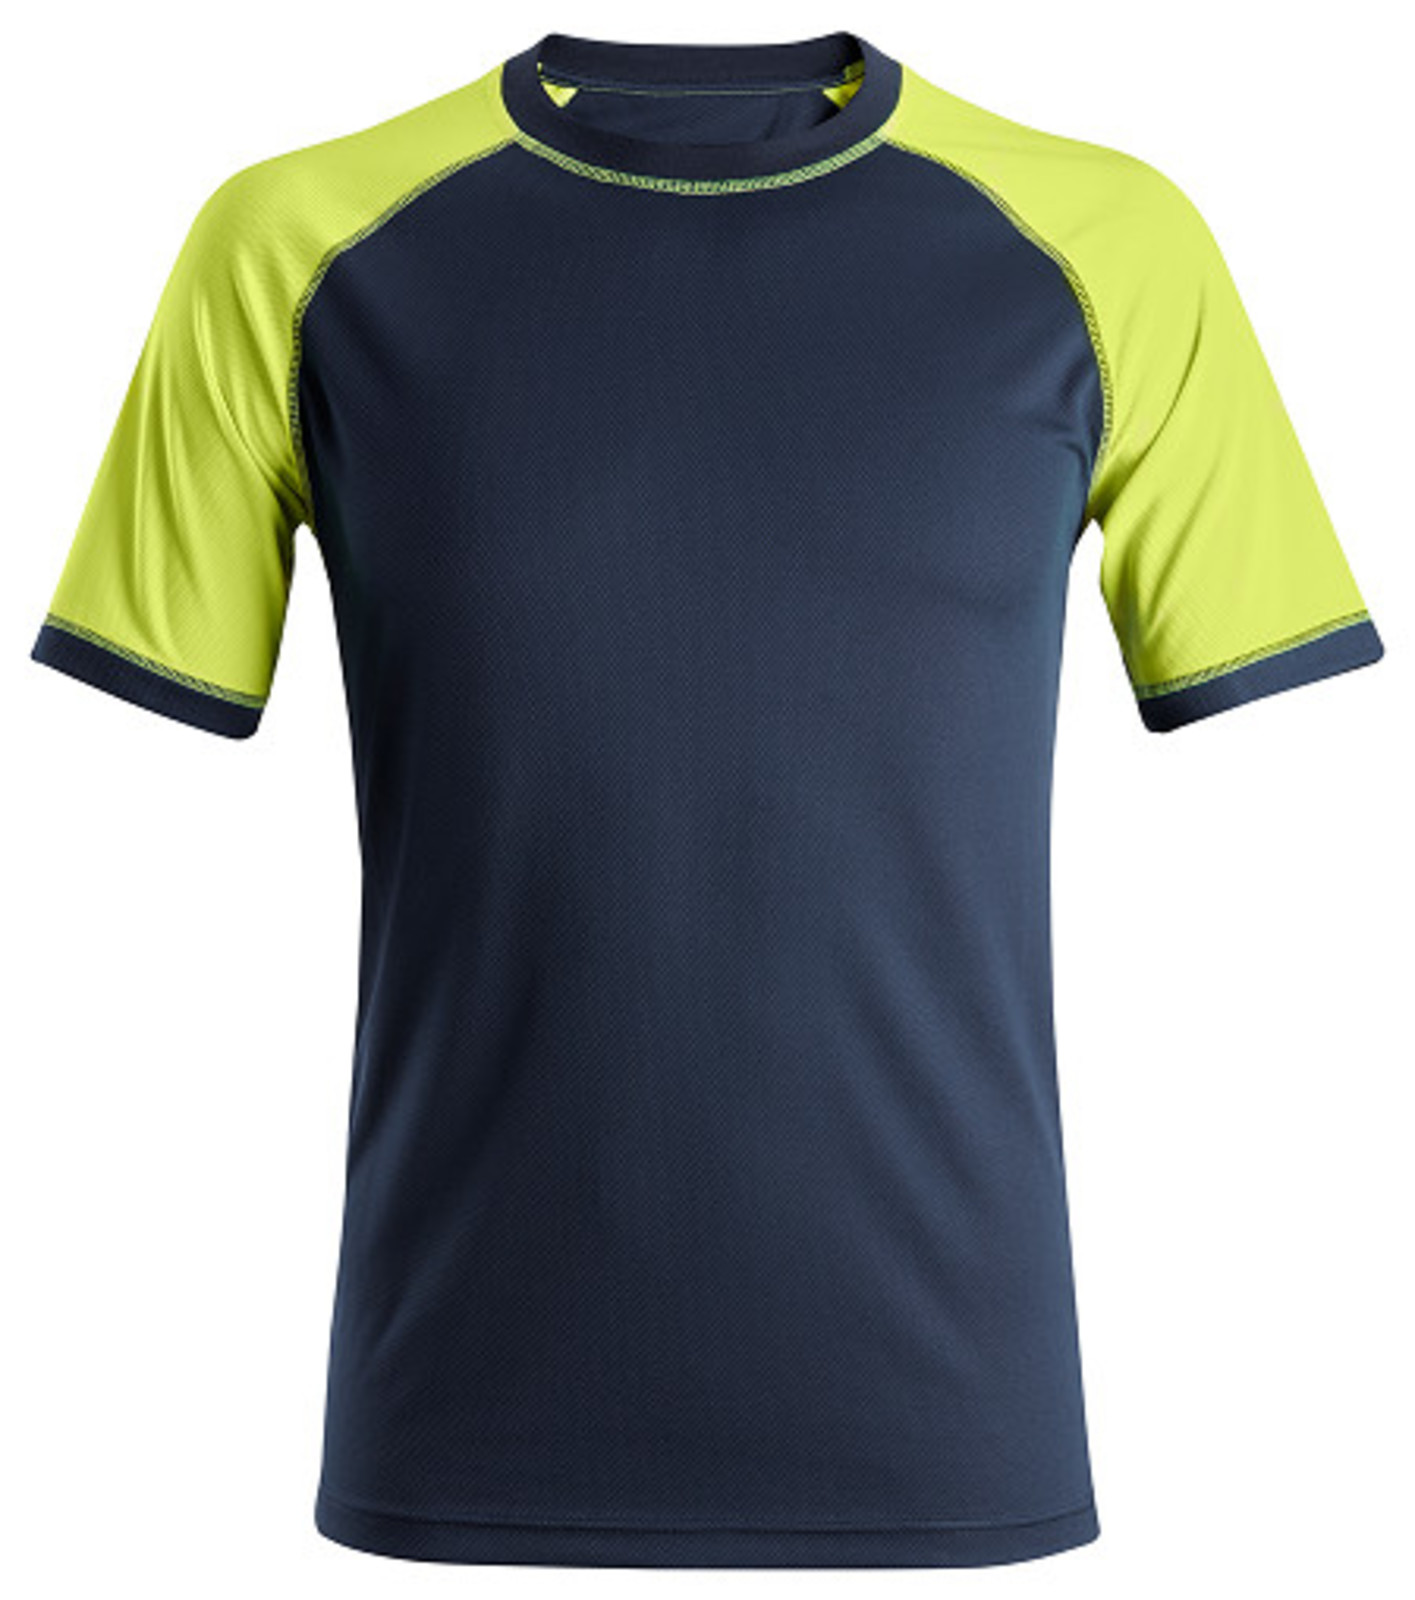 Pracovné tričko Snickers® Neon s krátkym rukávom - veľkosť: XXL, farba: navy/žltá